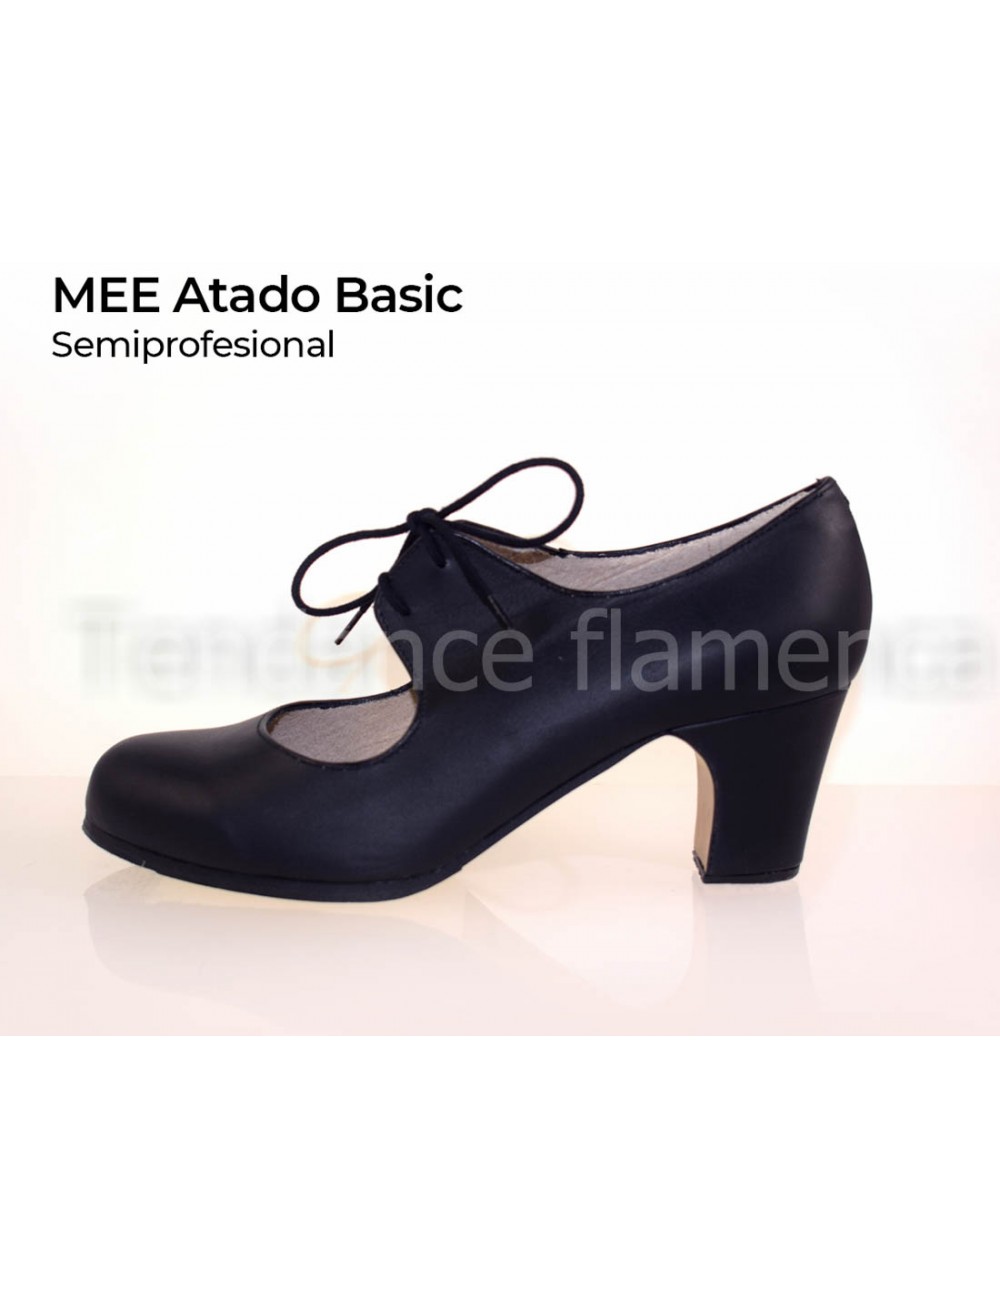 Taille 25-16,5 cm La Señorita Chaussures Flamenco Espagnol Argent Princesse de Danse